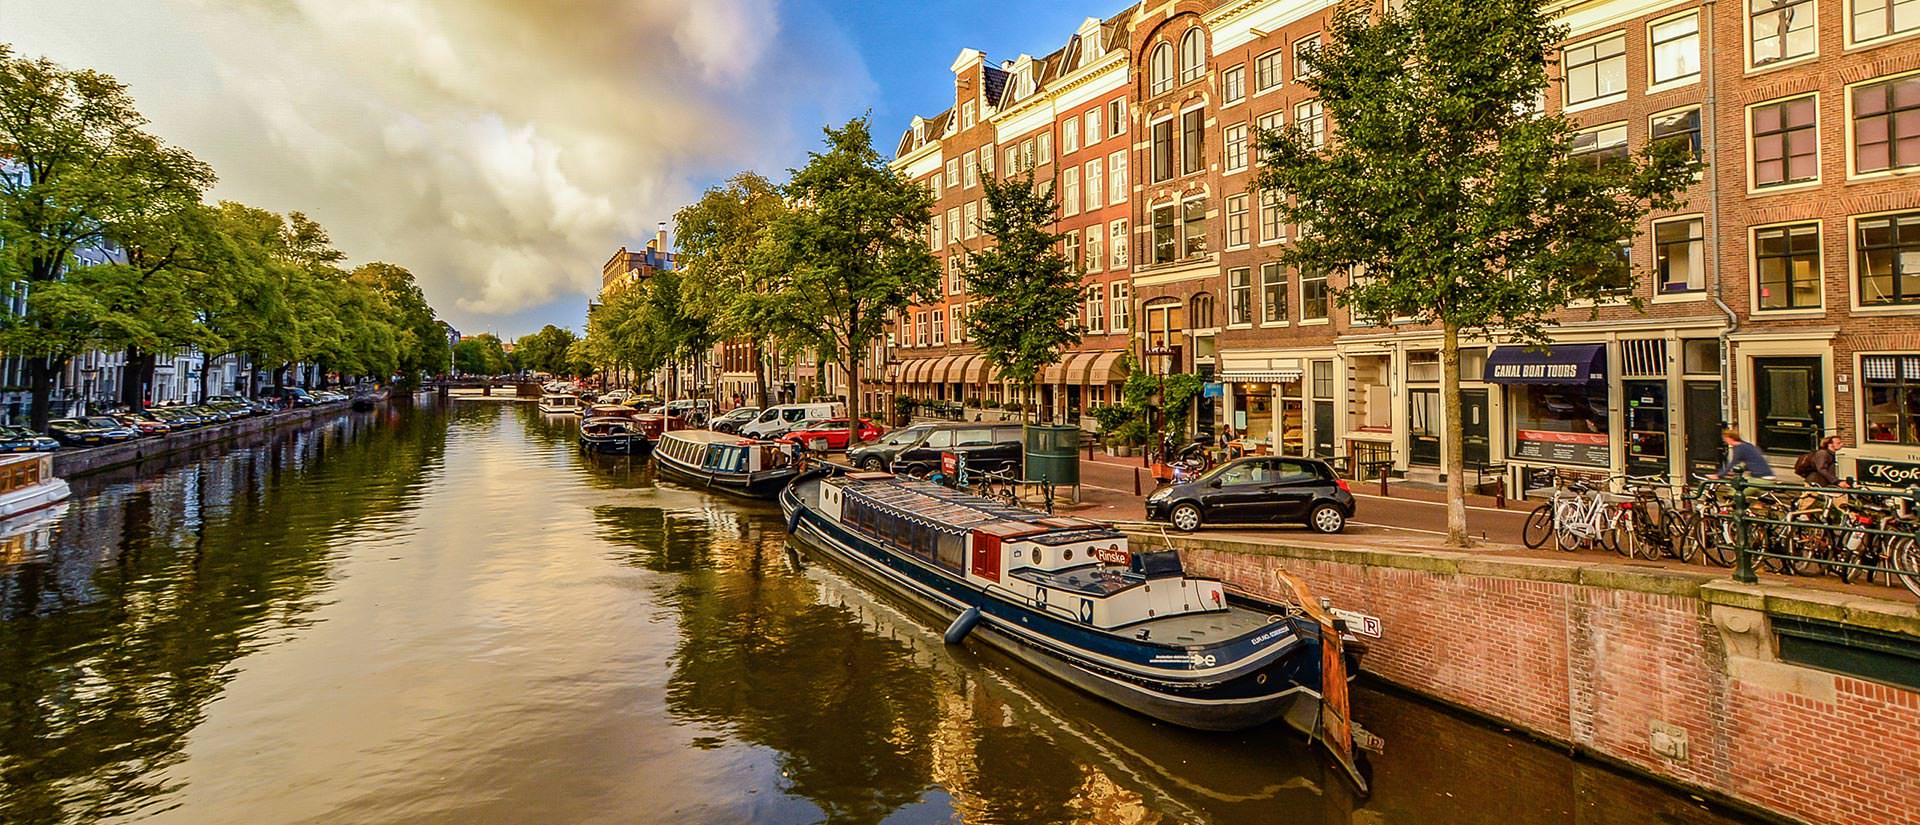 טיול לאמסטרדם - 5 ימים - אמסטרדם מזווית אחרת